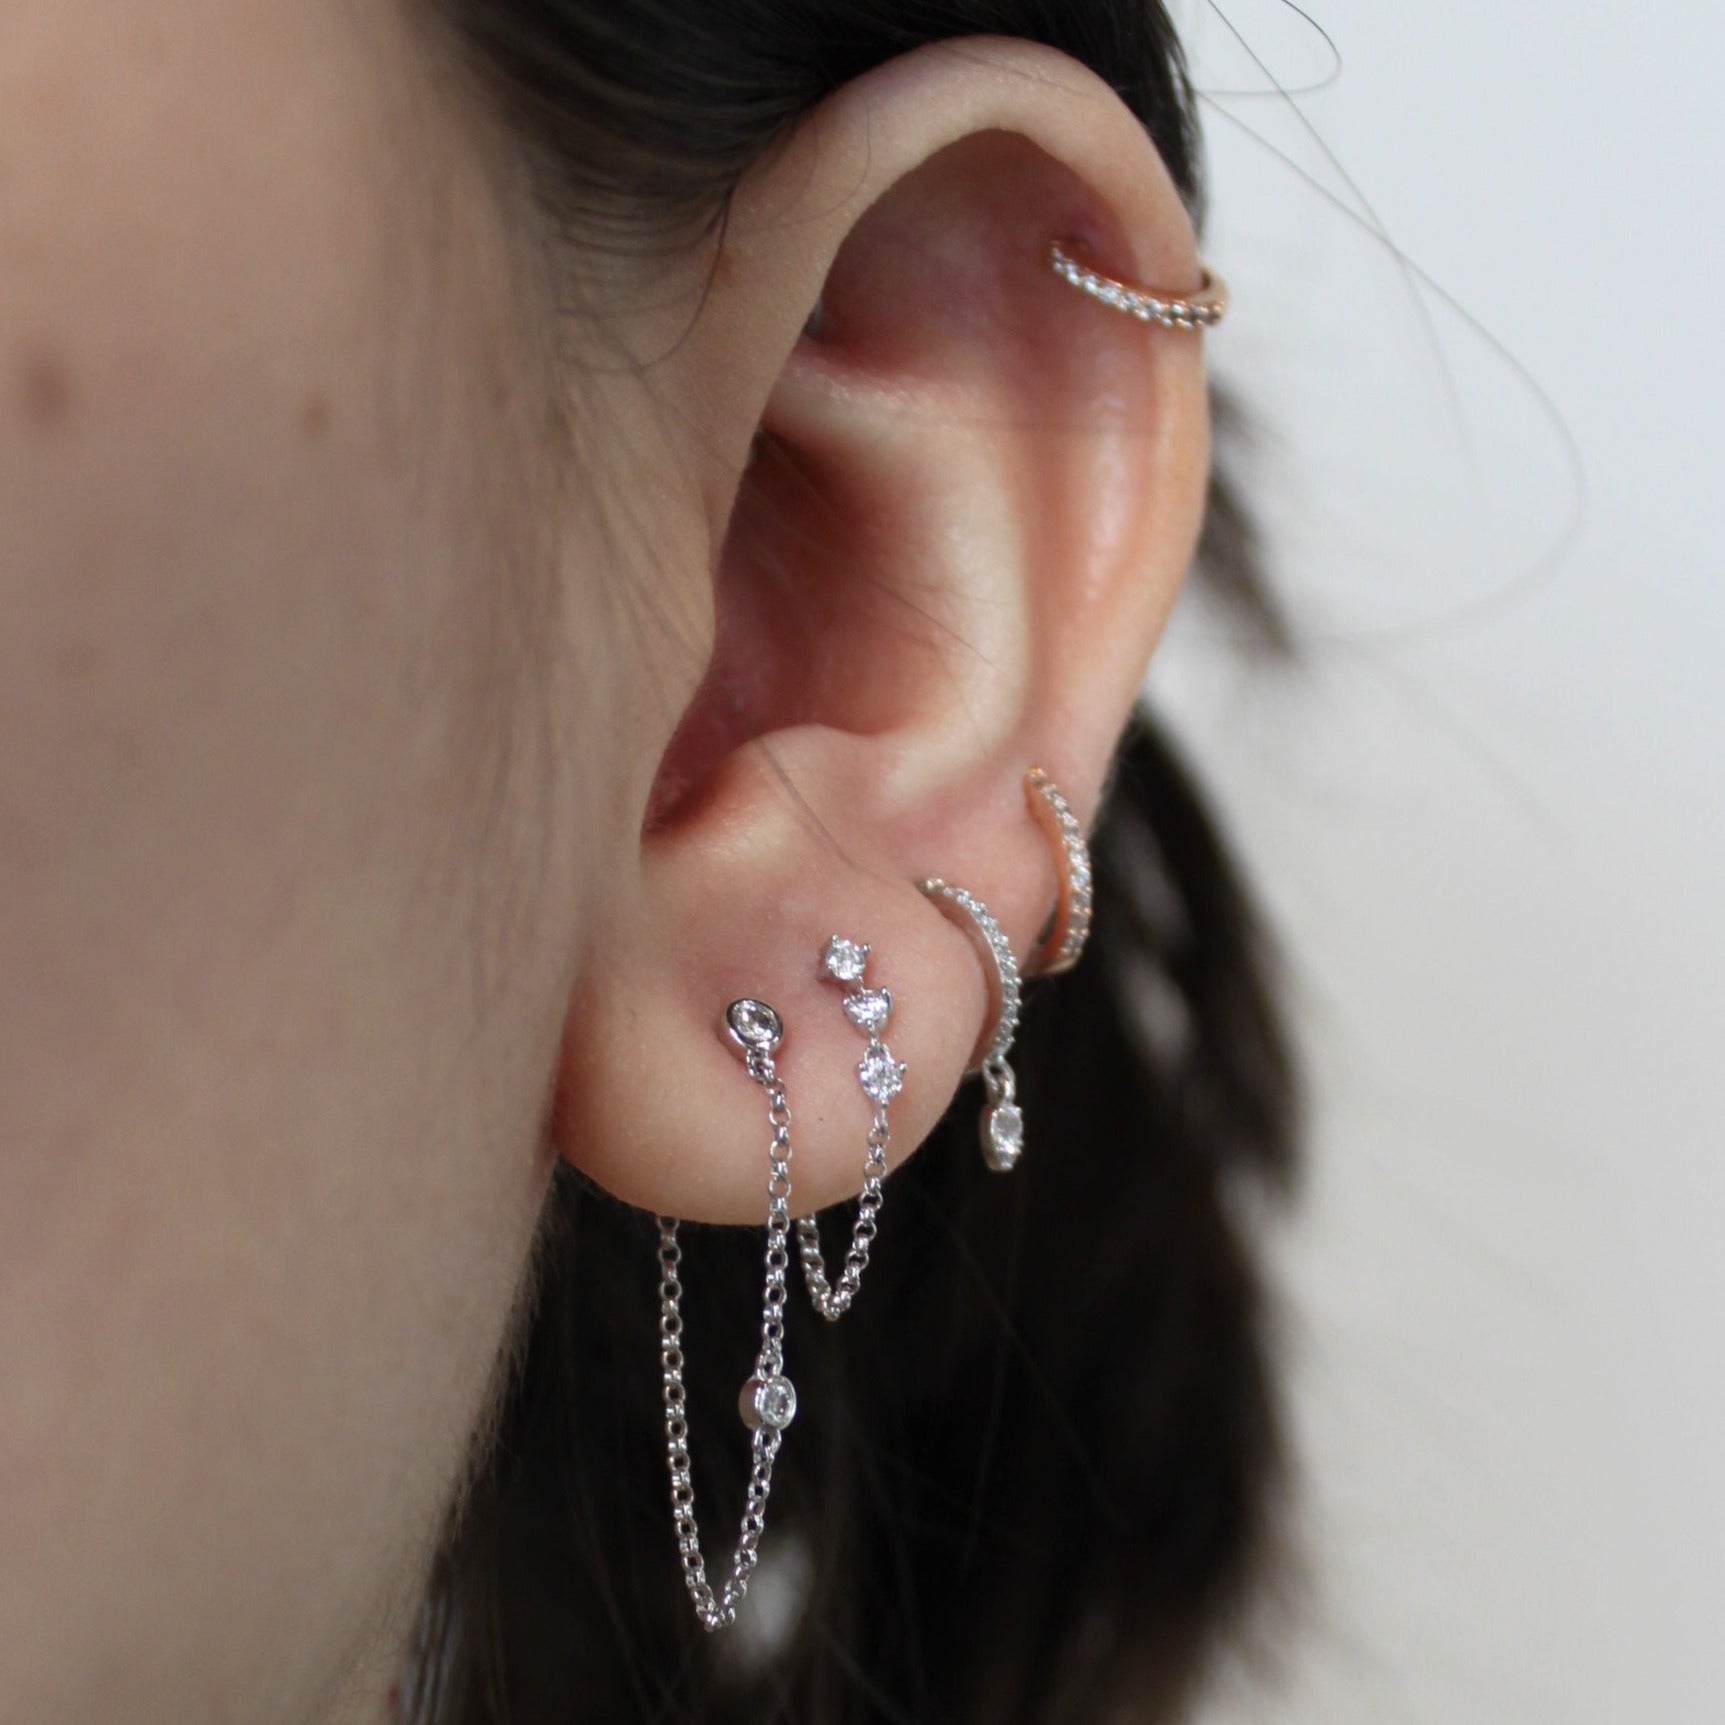 Two Bezeled Diamond Chain Earrings